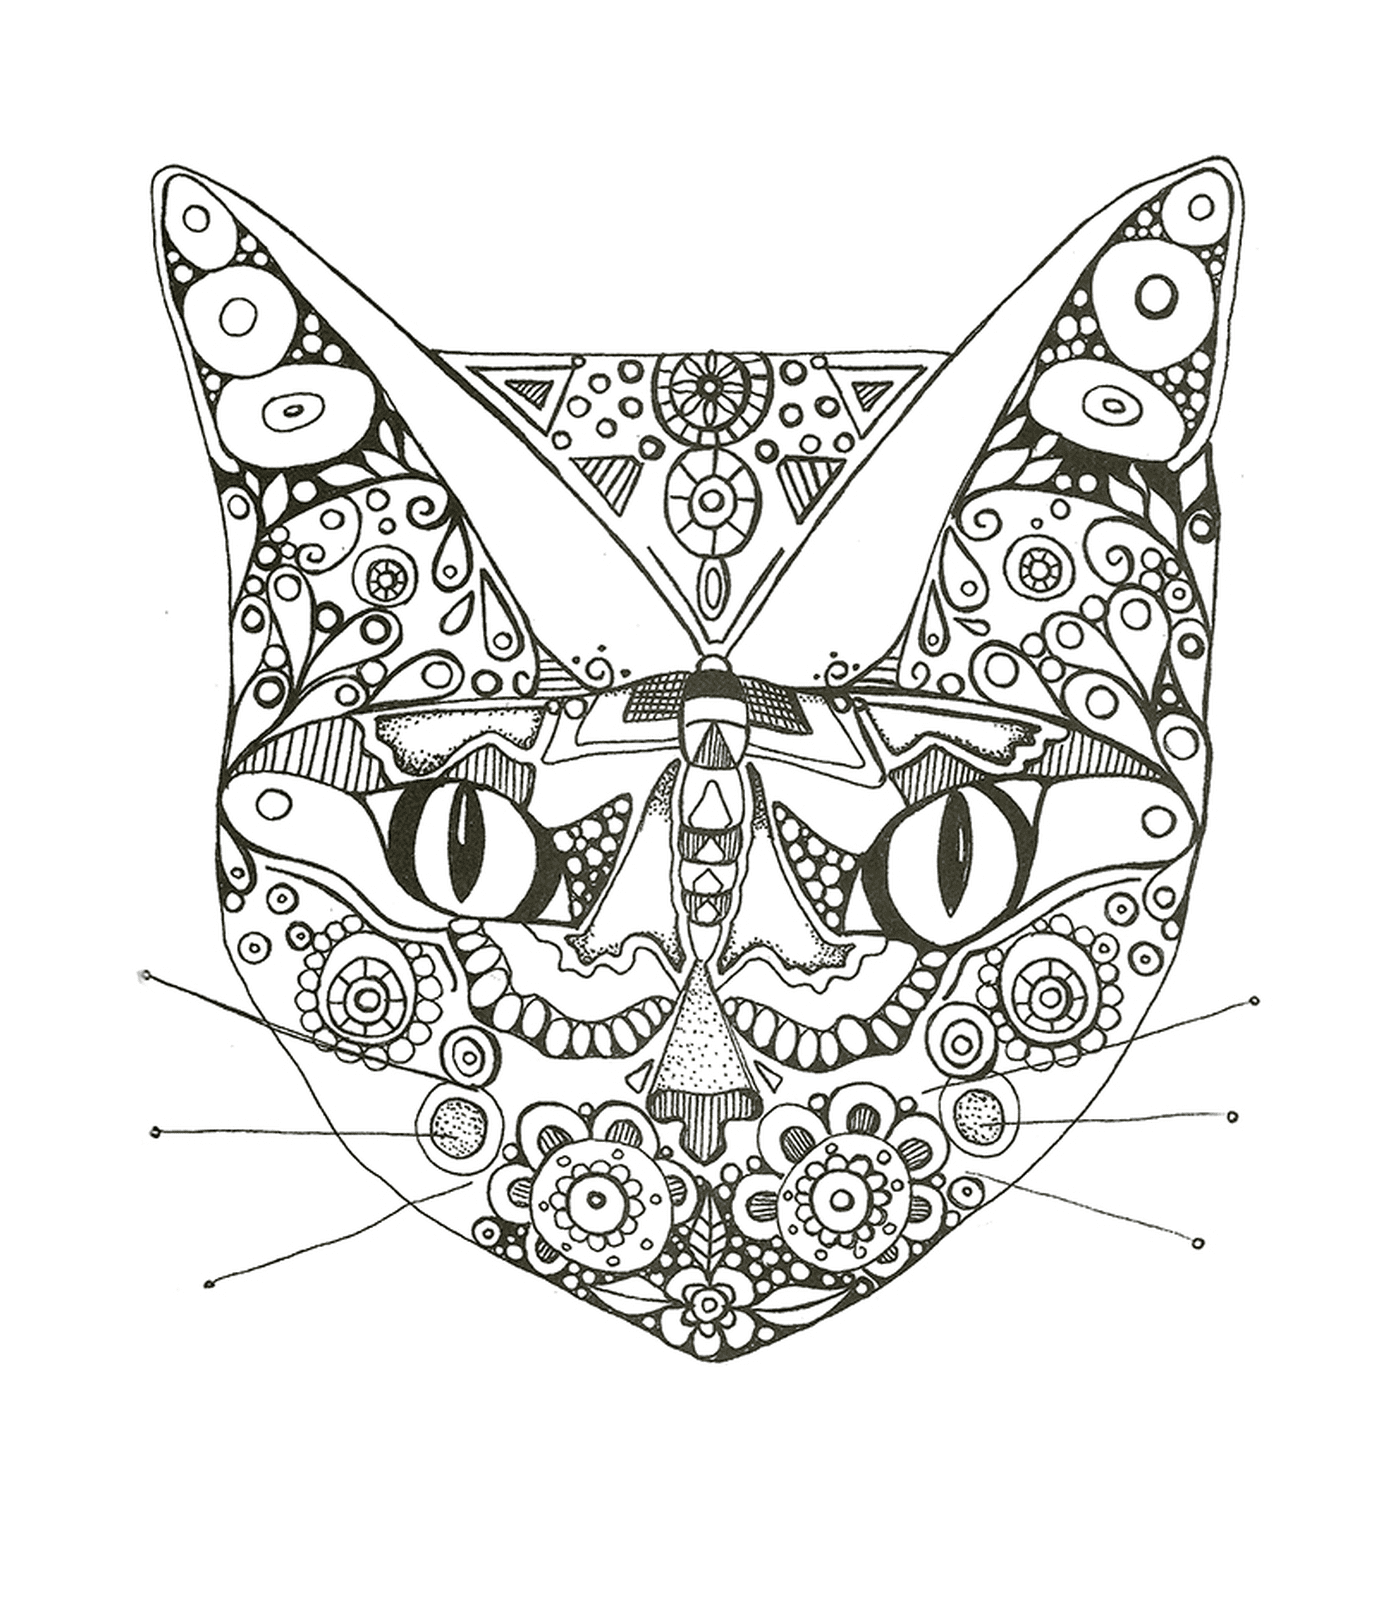  Cara de gato en el dibujo 